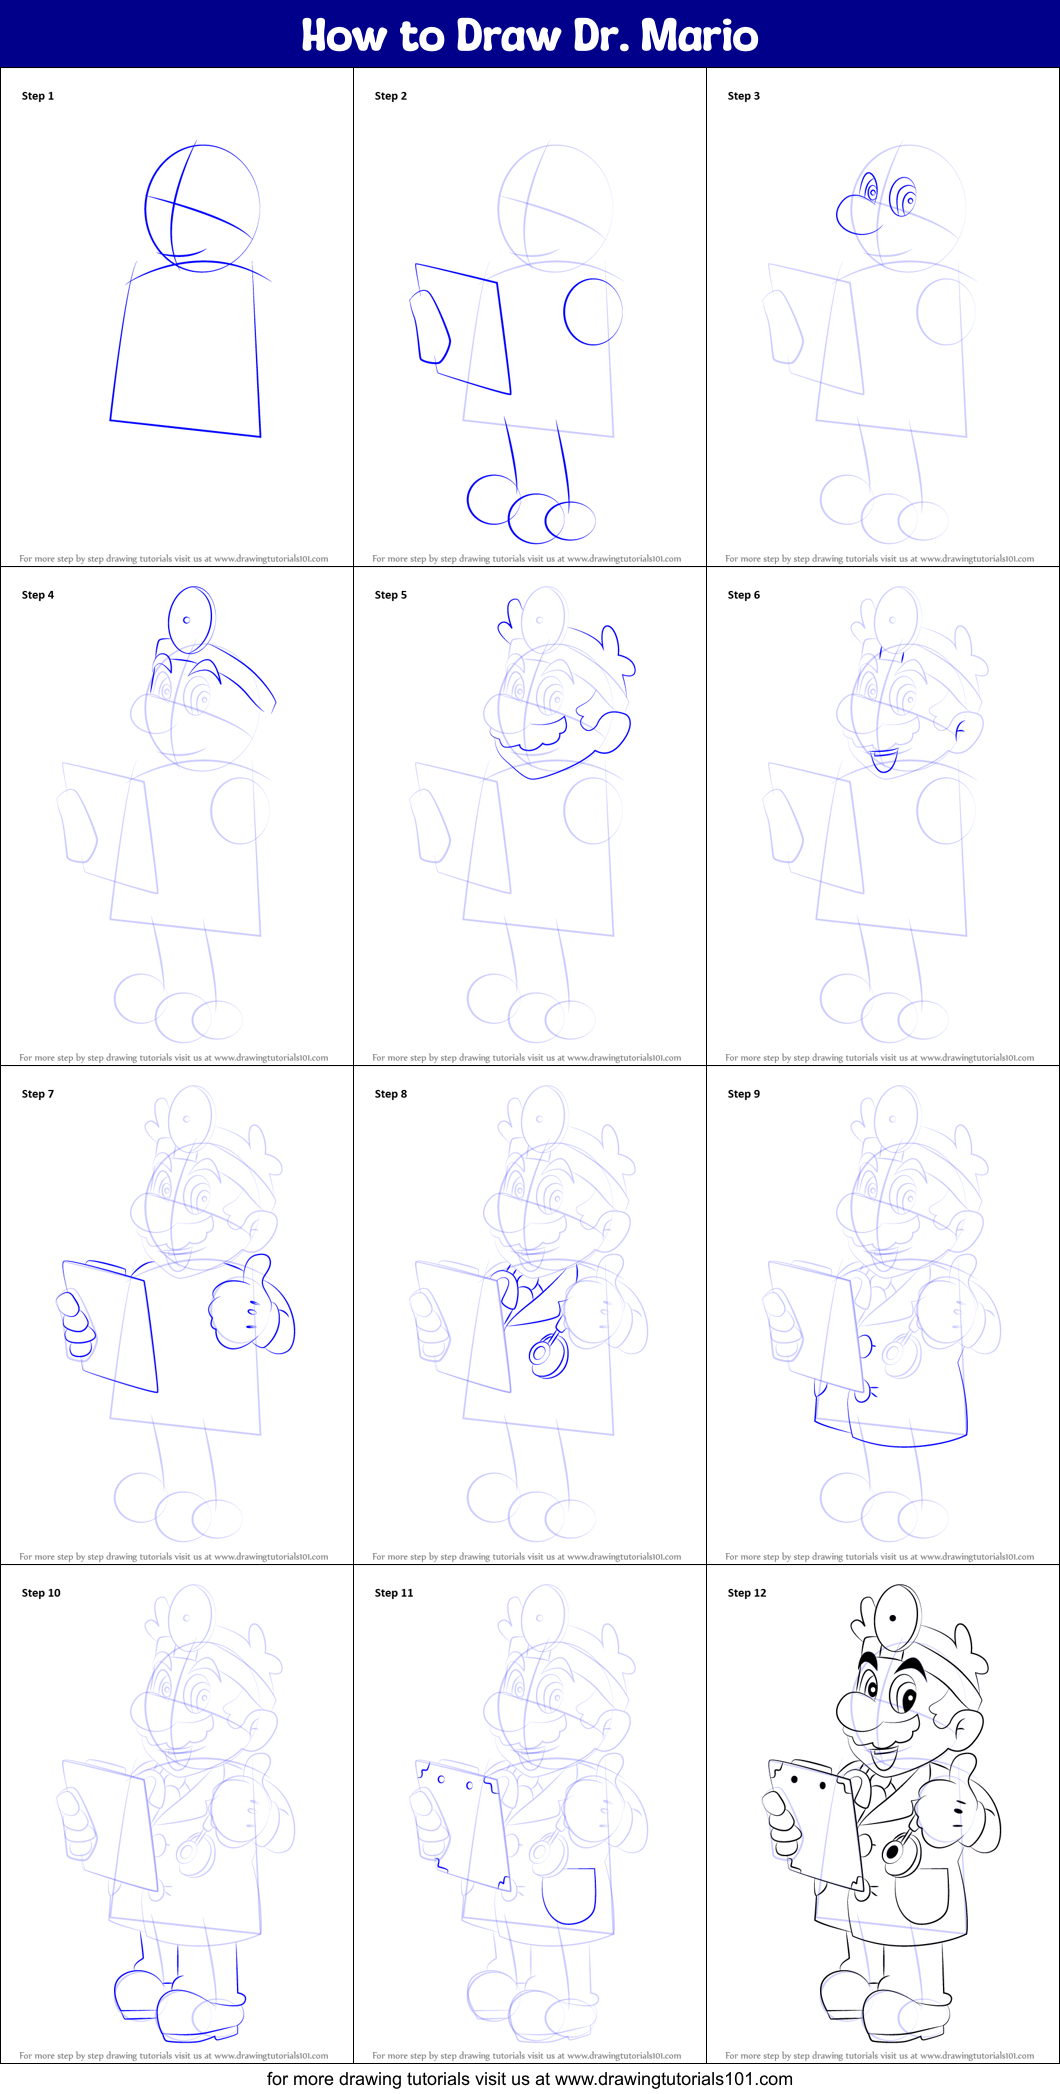 How to Draw Dr. Mario (Super Mario) Step by Step | DrawingTutorials101.com